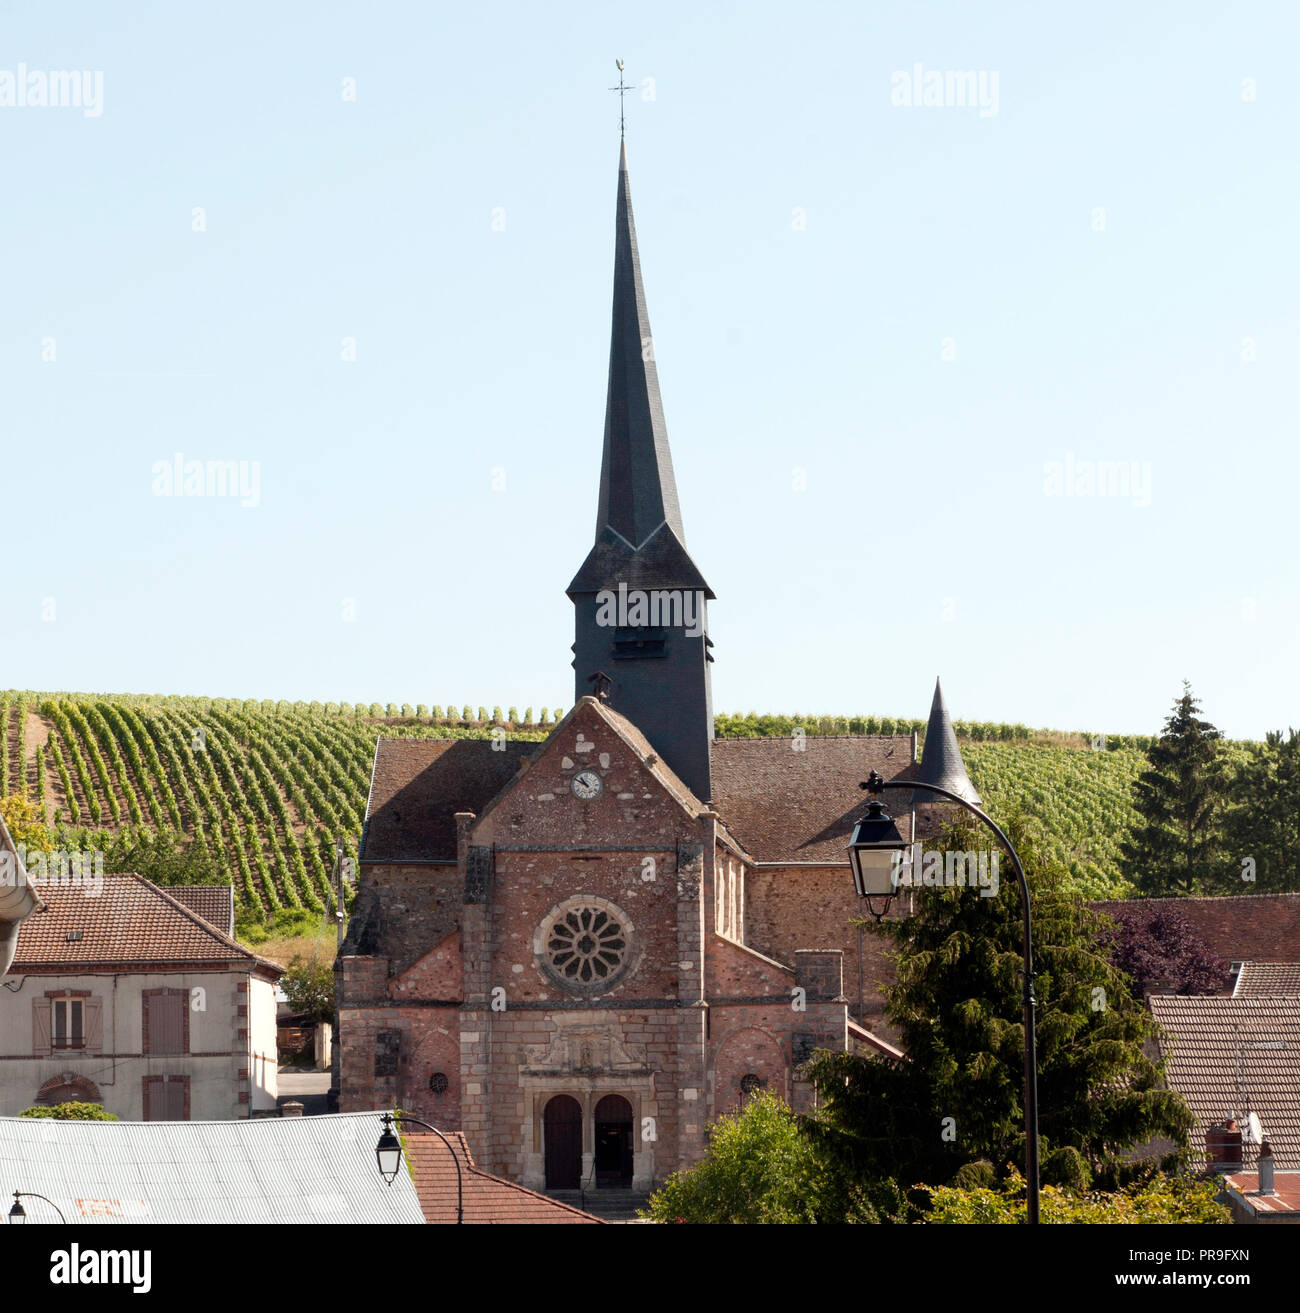 Blick auf das französische Dorf Obernai, Frankreich, und die kleine Kirche von Weinbergen umgeben Stockfoto